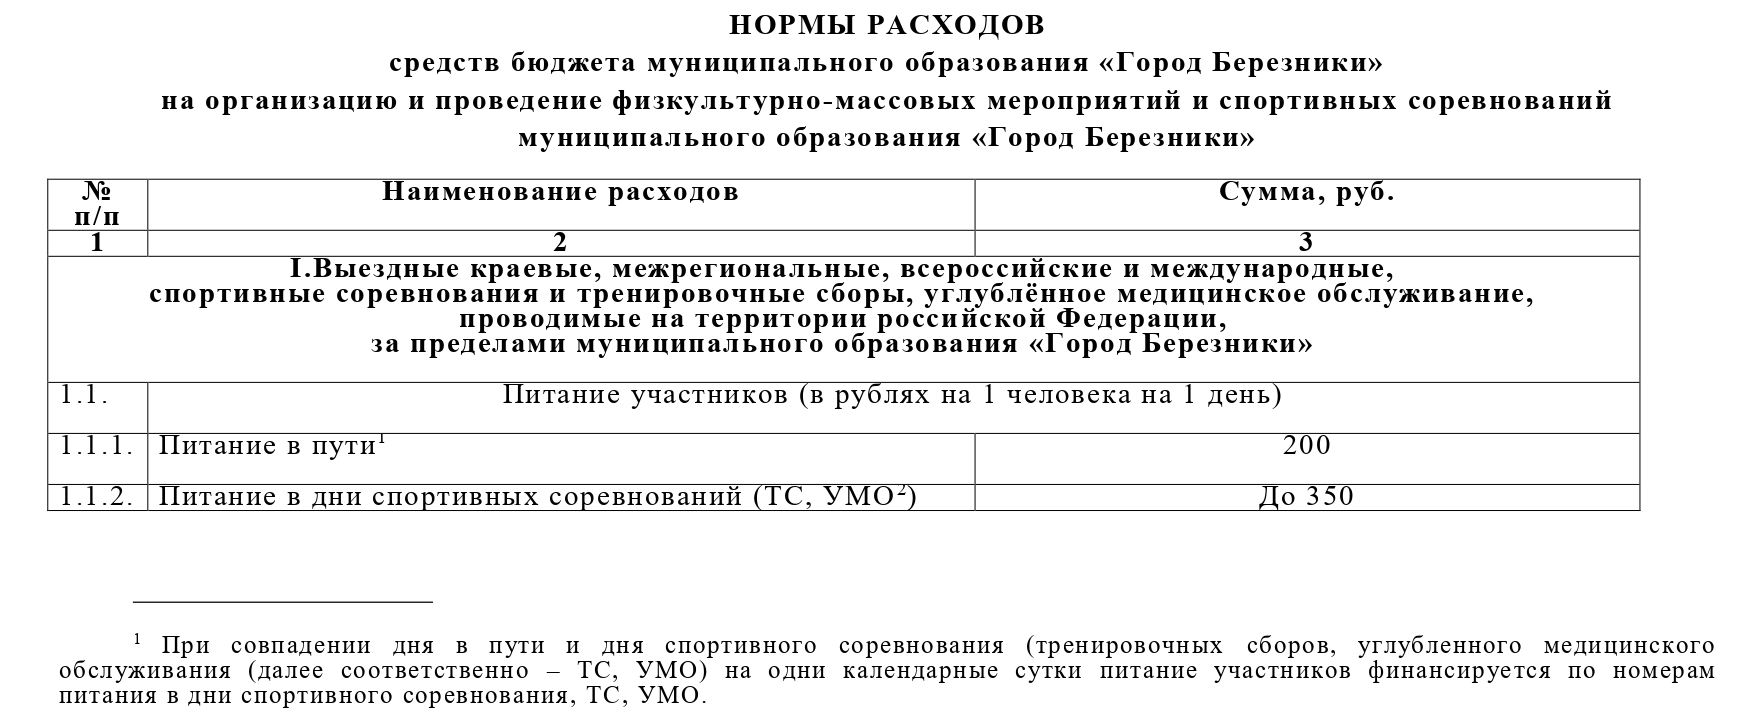 Ульяновск постановление администрации